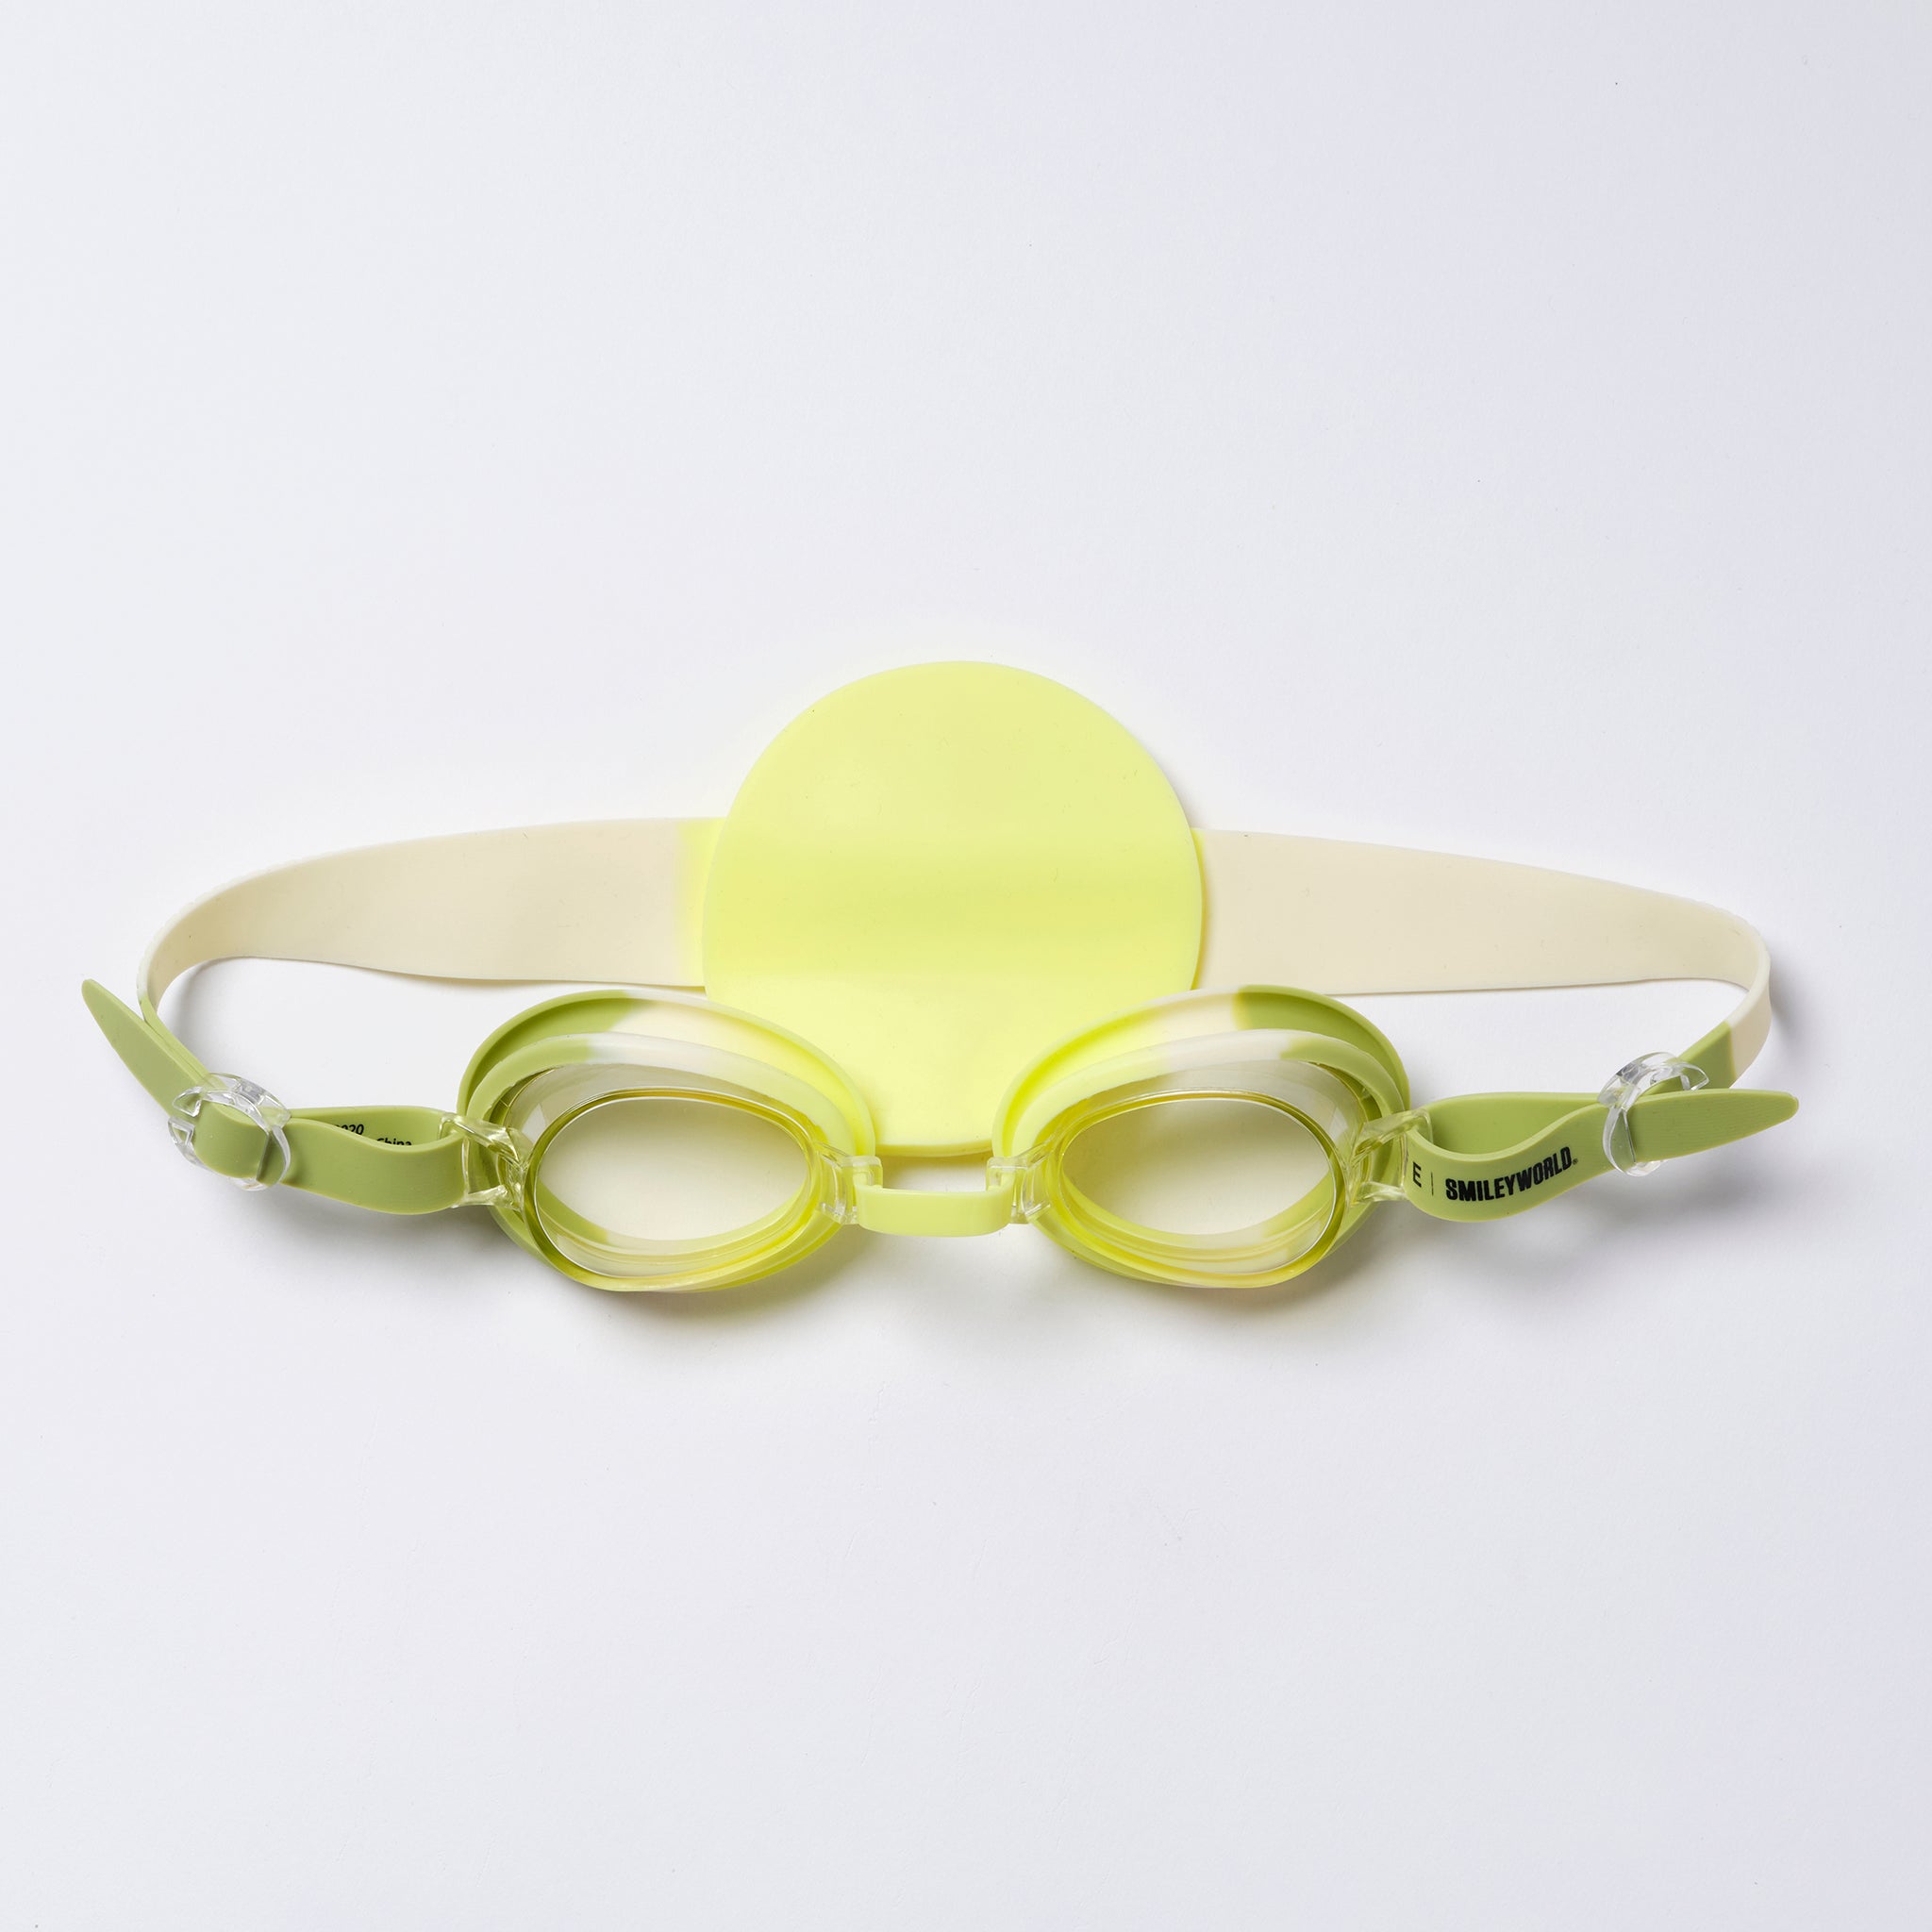 SUNNYLiFE | Mini Swim Goggles | SMILEY World Sol Sea